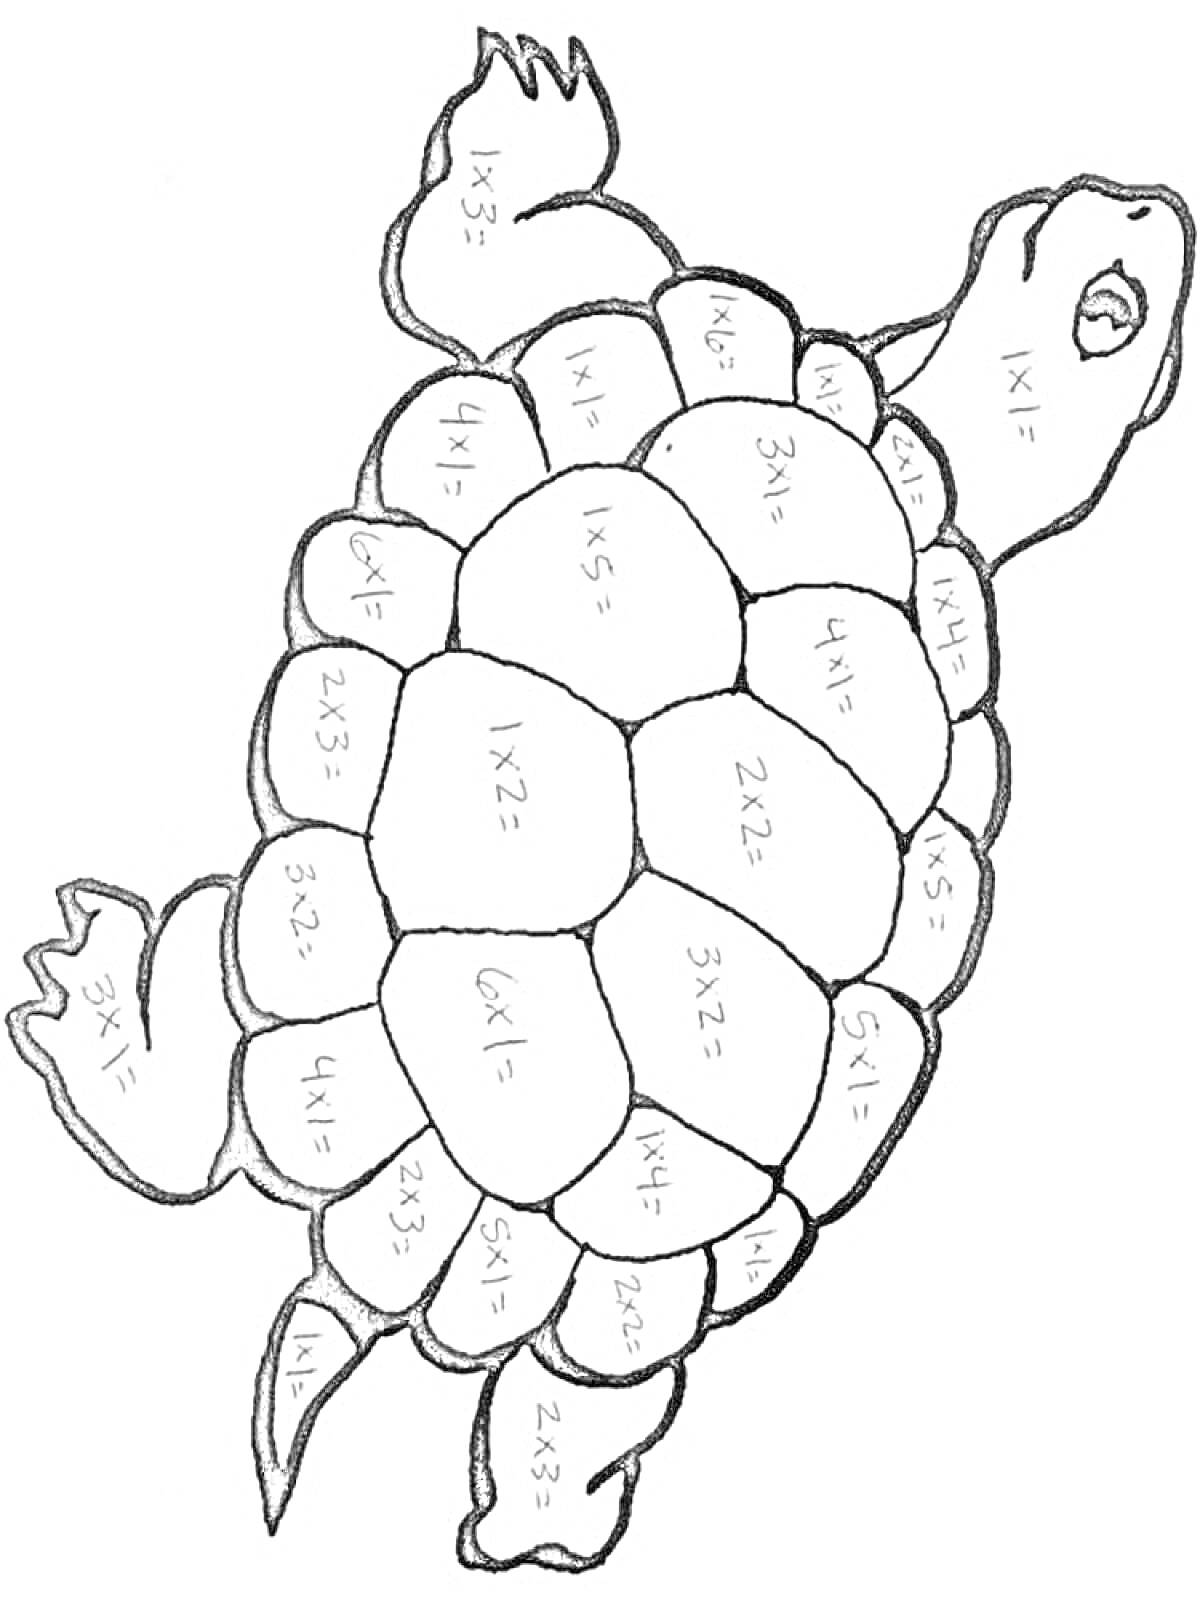 Раскраска Черепаха с математическими задачами на панцире